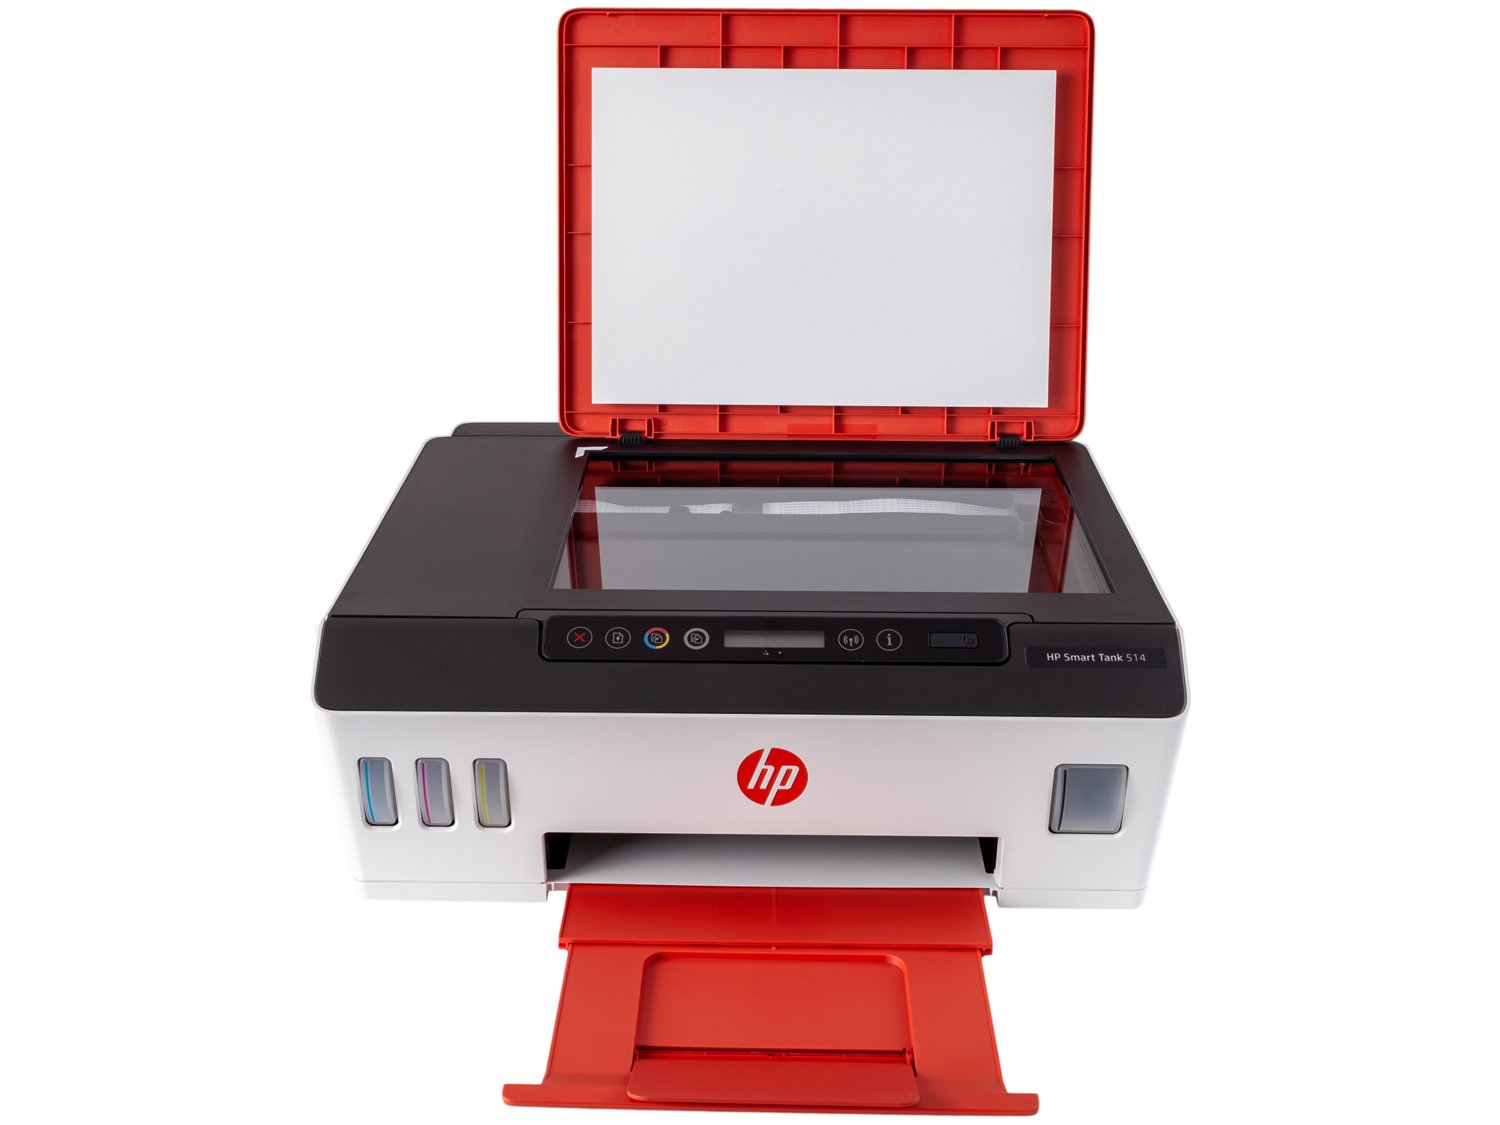 Impressora Multifuncional HP Smart Tank 514 - Tanque de Tinta Colorida Wi-Fi USB - Bivolt - 3